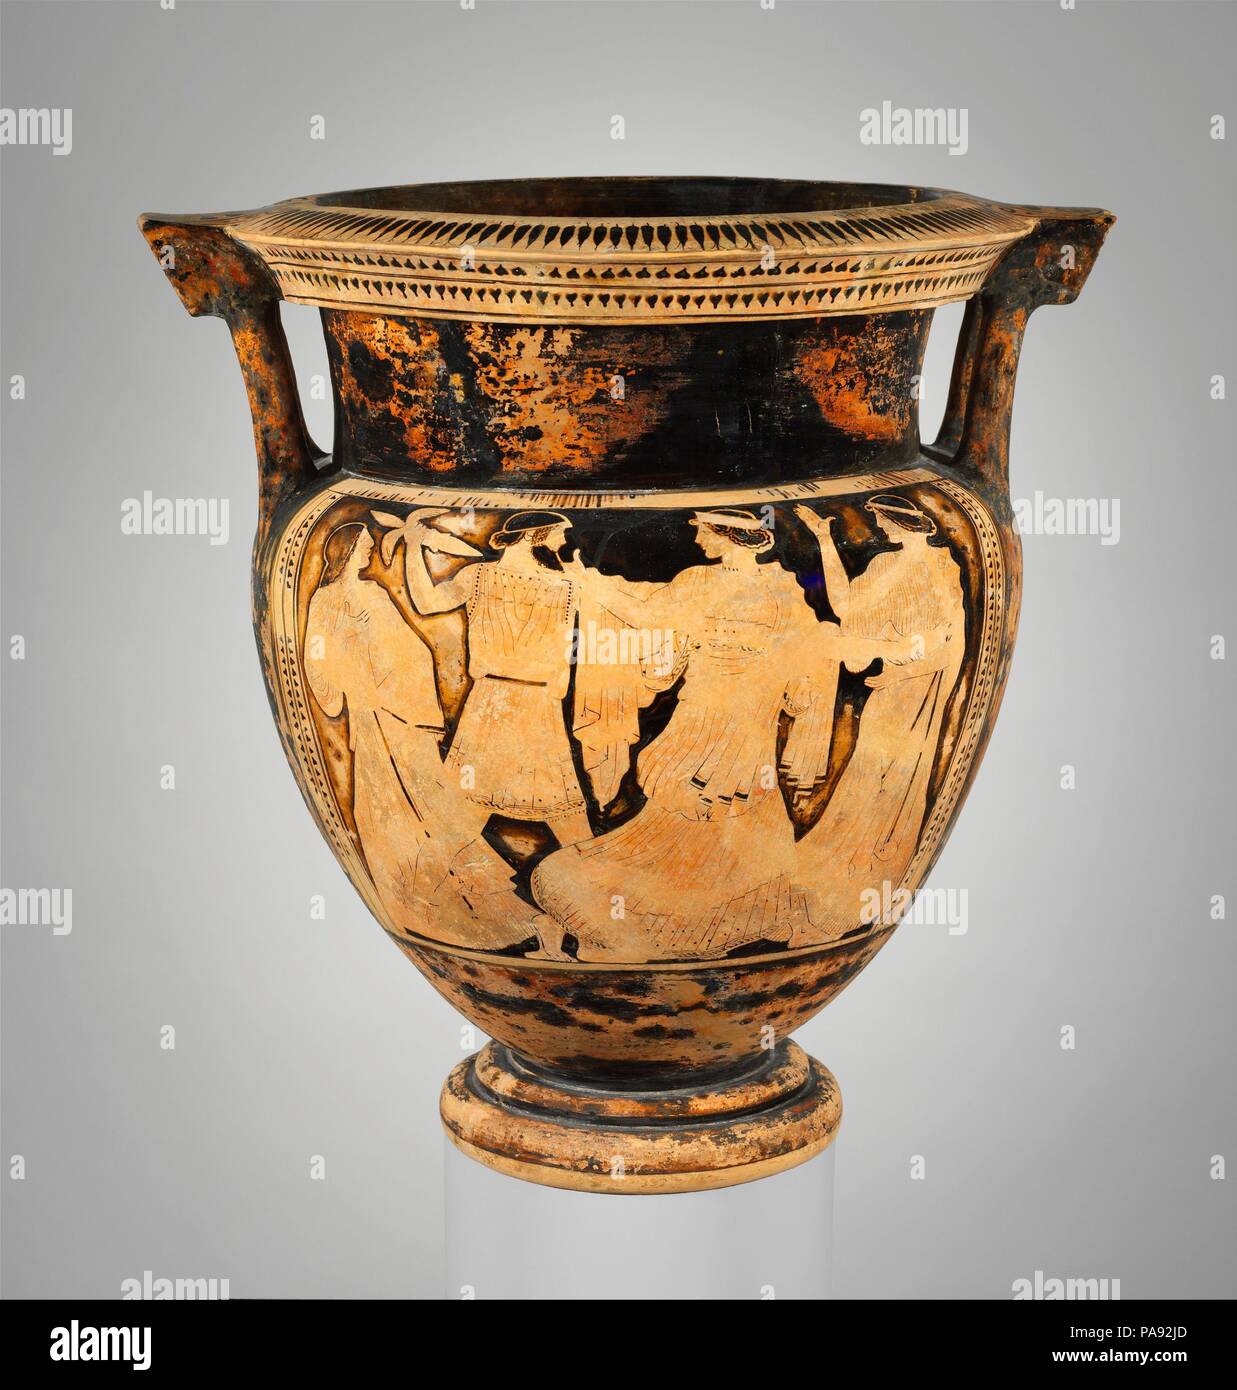 Terrakotta Spalte - Krater (Vase für das Mischen von Wein und Wasser). Kultur: Griechisch, Dachboden. Abmessungen: H.21 cm. (54,3 cm) Durchmesser der Öffnung 13 cm. (34,3 cm). Datum: Ca. 460 v. Chr.. Vorderseite, Zeus verfolgt Ägina Rückwärts, Mann mit Personal und drei Frauen der Mythos des Zeus und Ägina selten vertreten ist. Ägina ist eine Nymphe, die Zeus aus auf die Insel, die ihren Namen trägt. Mit sparsamen Mitteln, der Maler charakterisiert erfolgreich jede der Figuren in der Szene. Museum: Metropolitan Museum of Art, New York, USA. Stockfoto